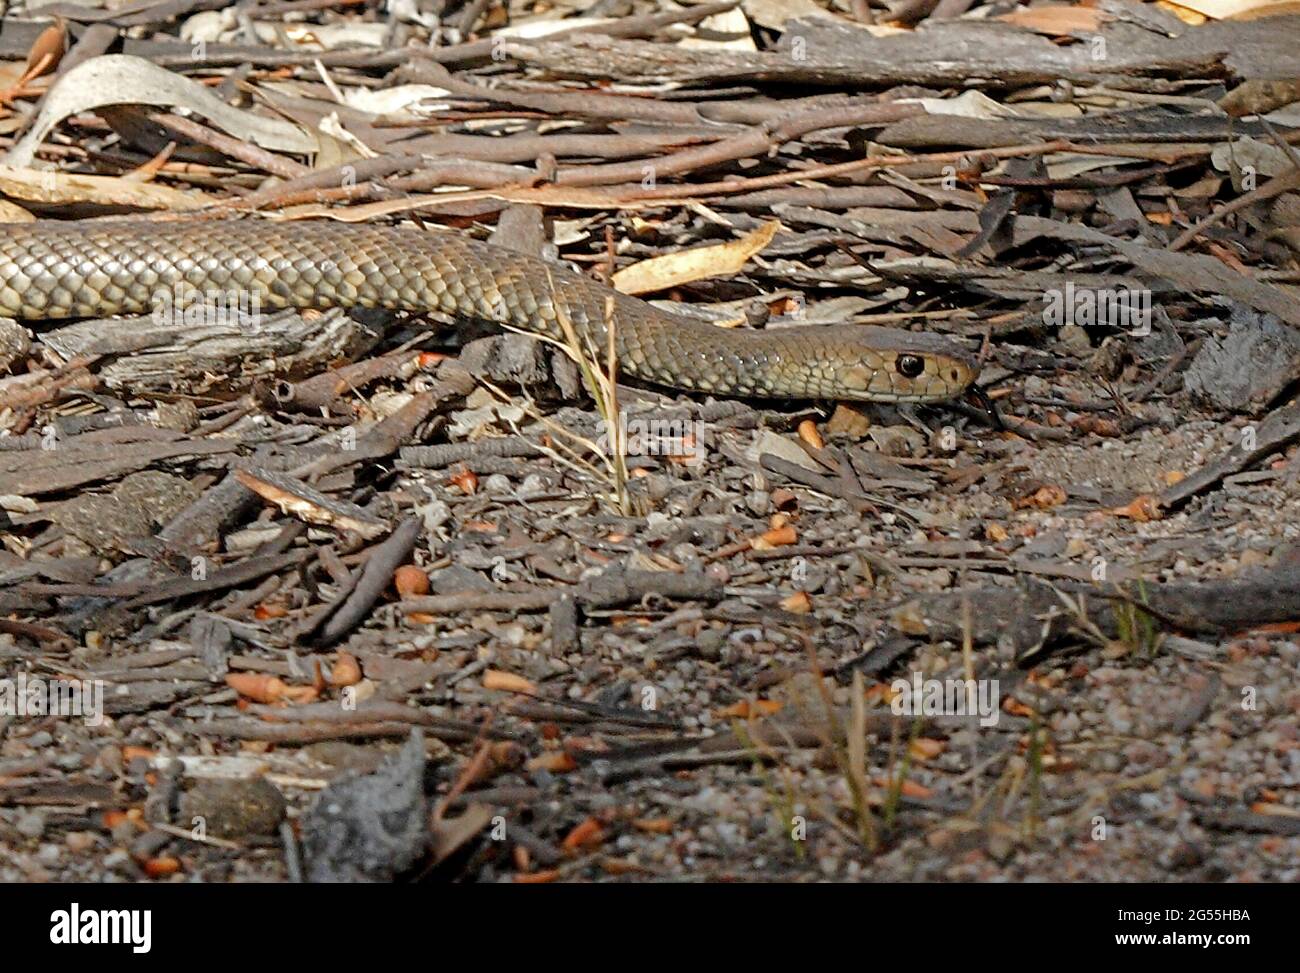 Le serpent brun de l'est (Pseudonaja textilis) se déplace sur le sol forestier sec Girraween NP, Queensland, Australie Janvier Banque D'Images